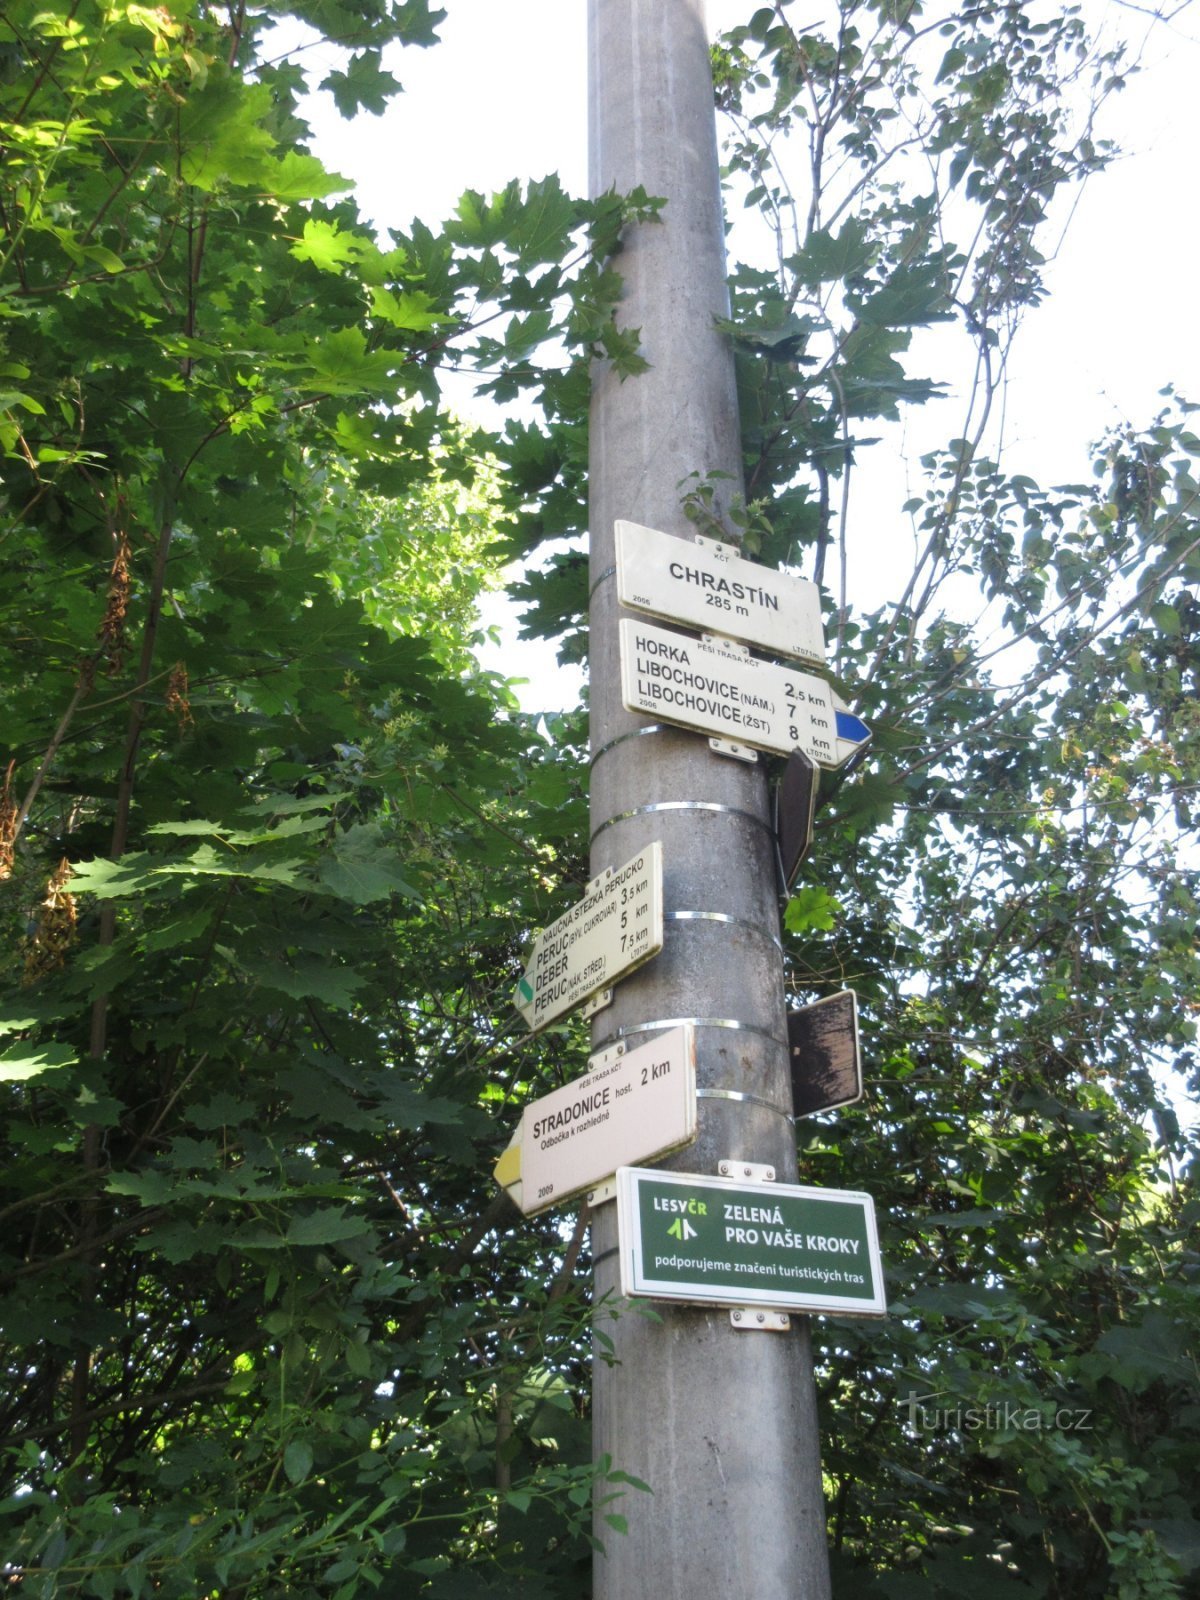 Placa de sinalização em Chrastín